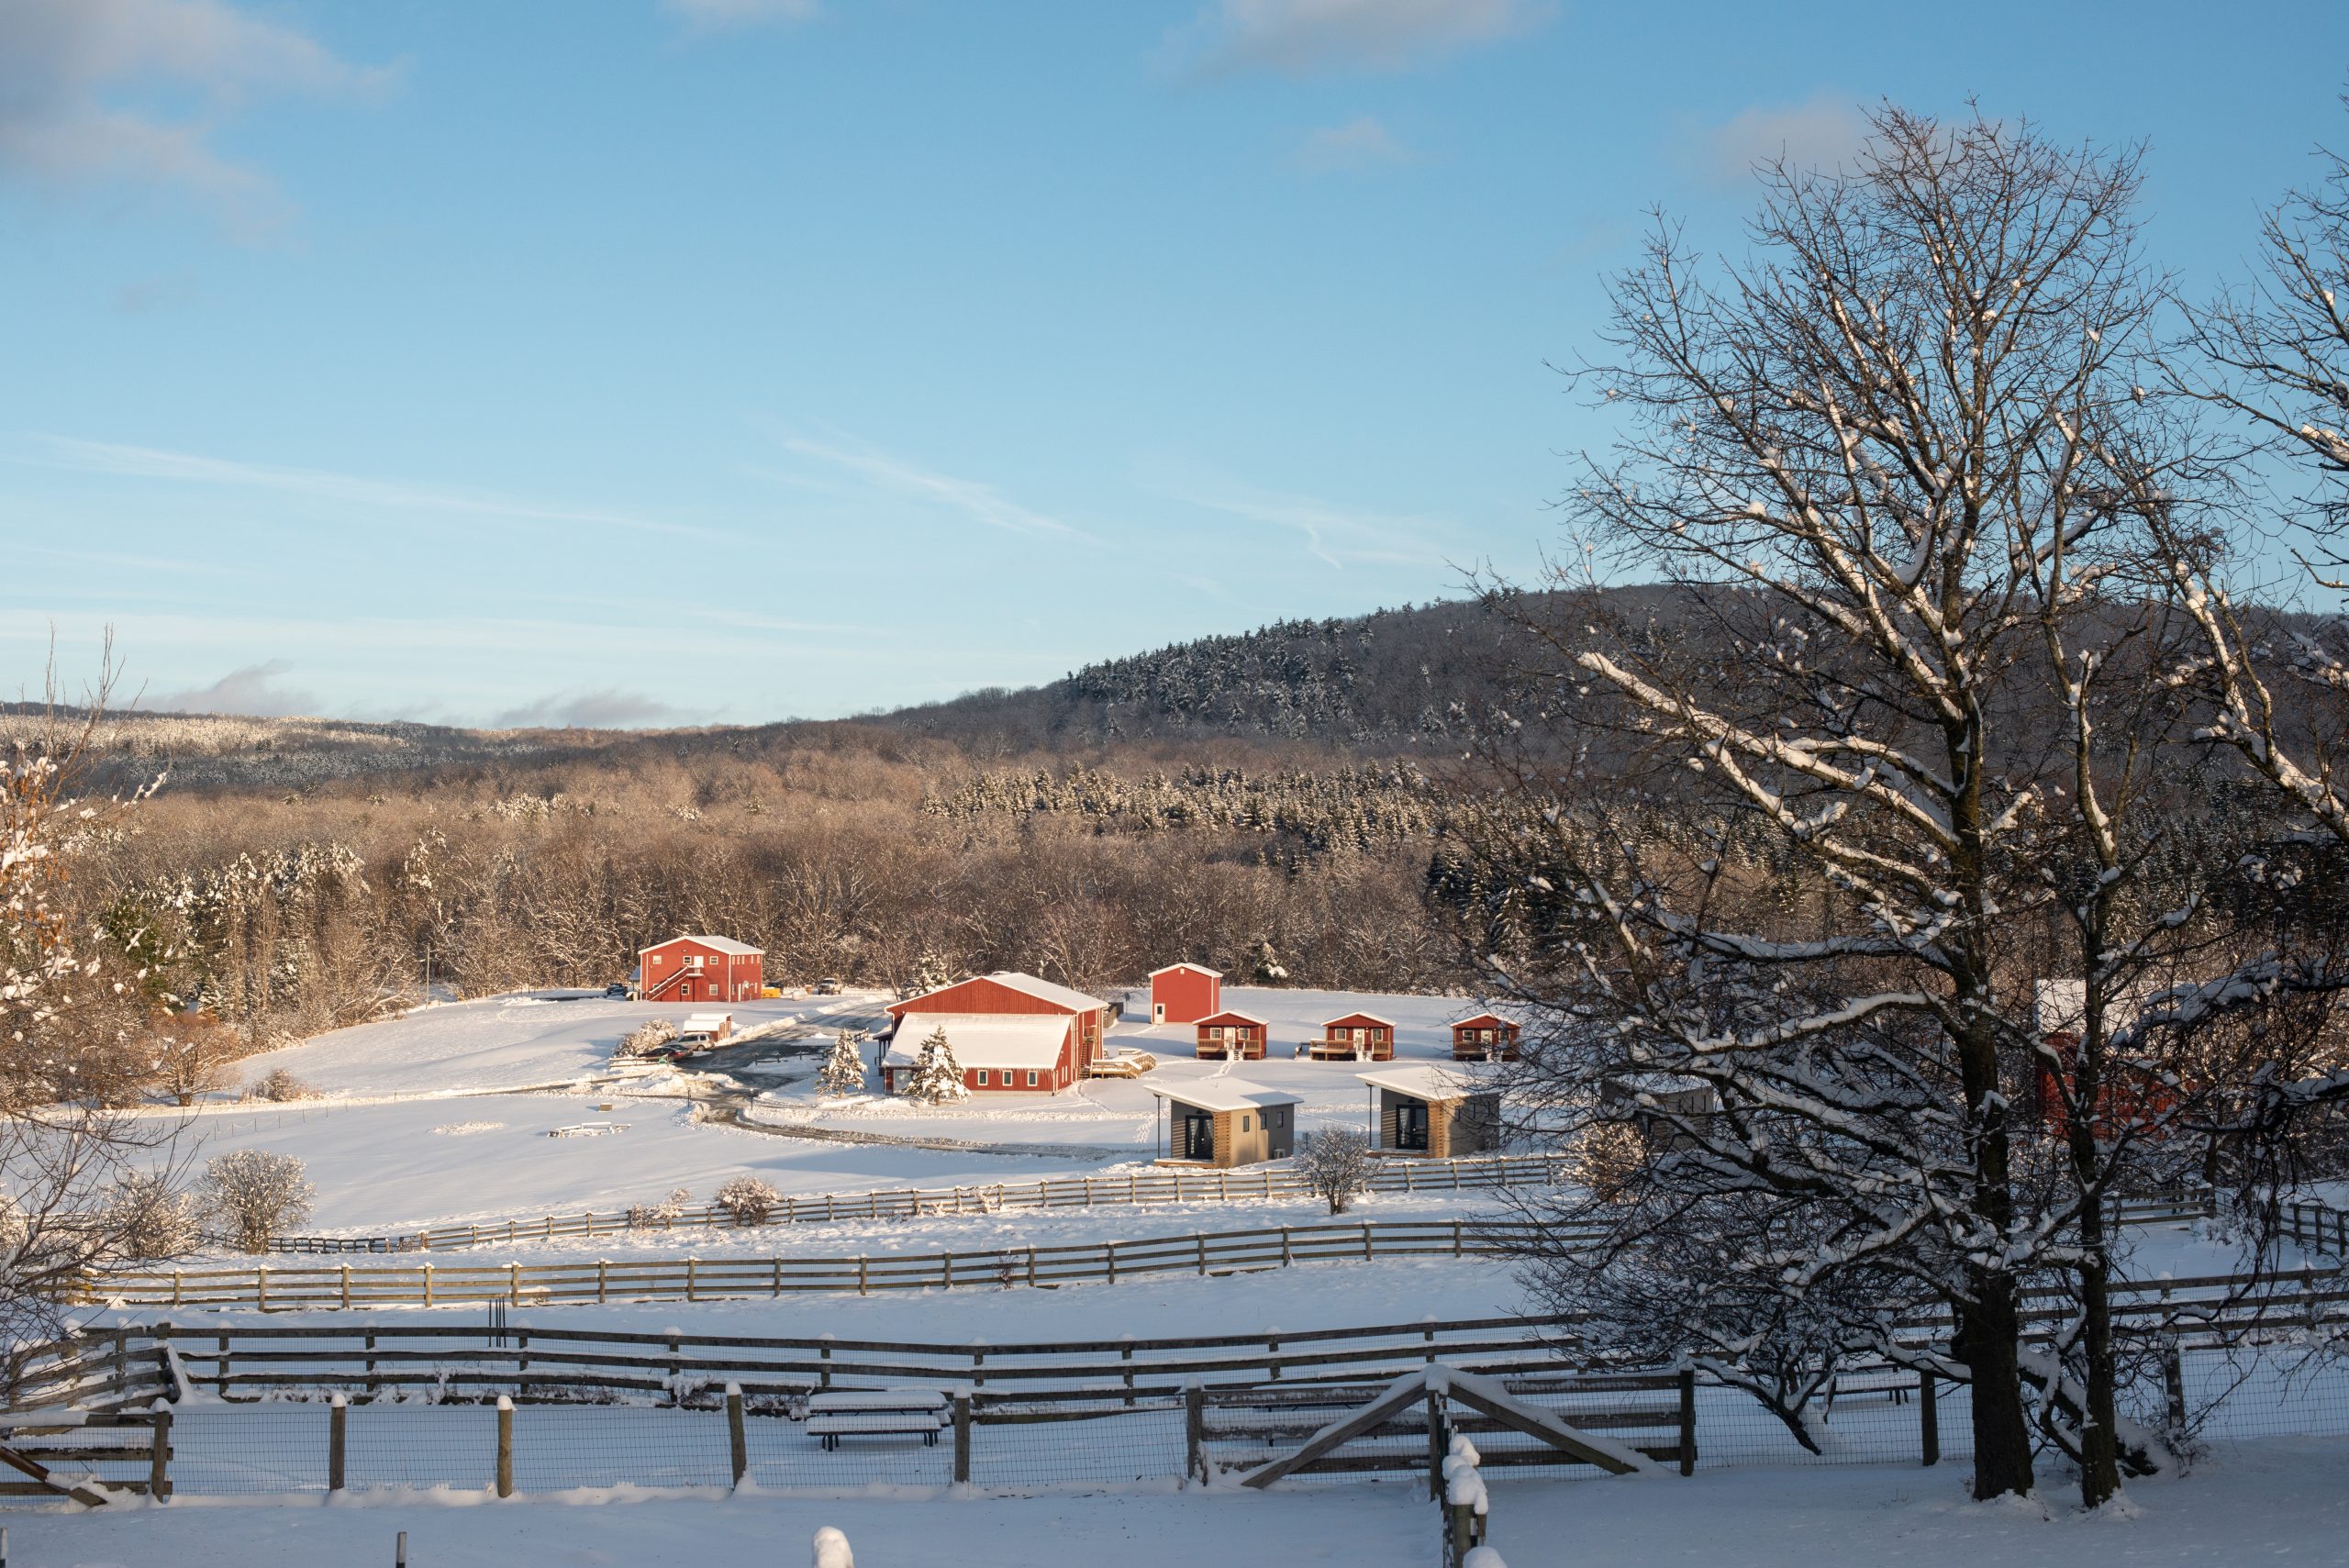 Snowy landscape at Farm Sanctuary